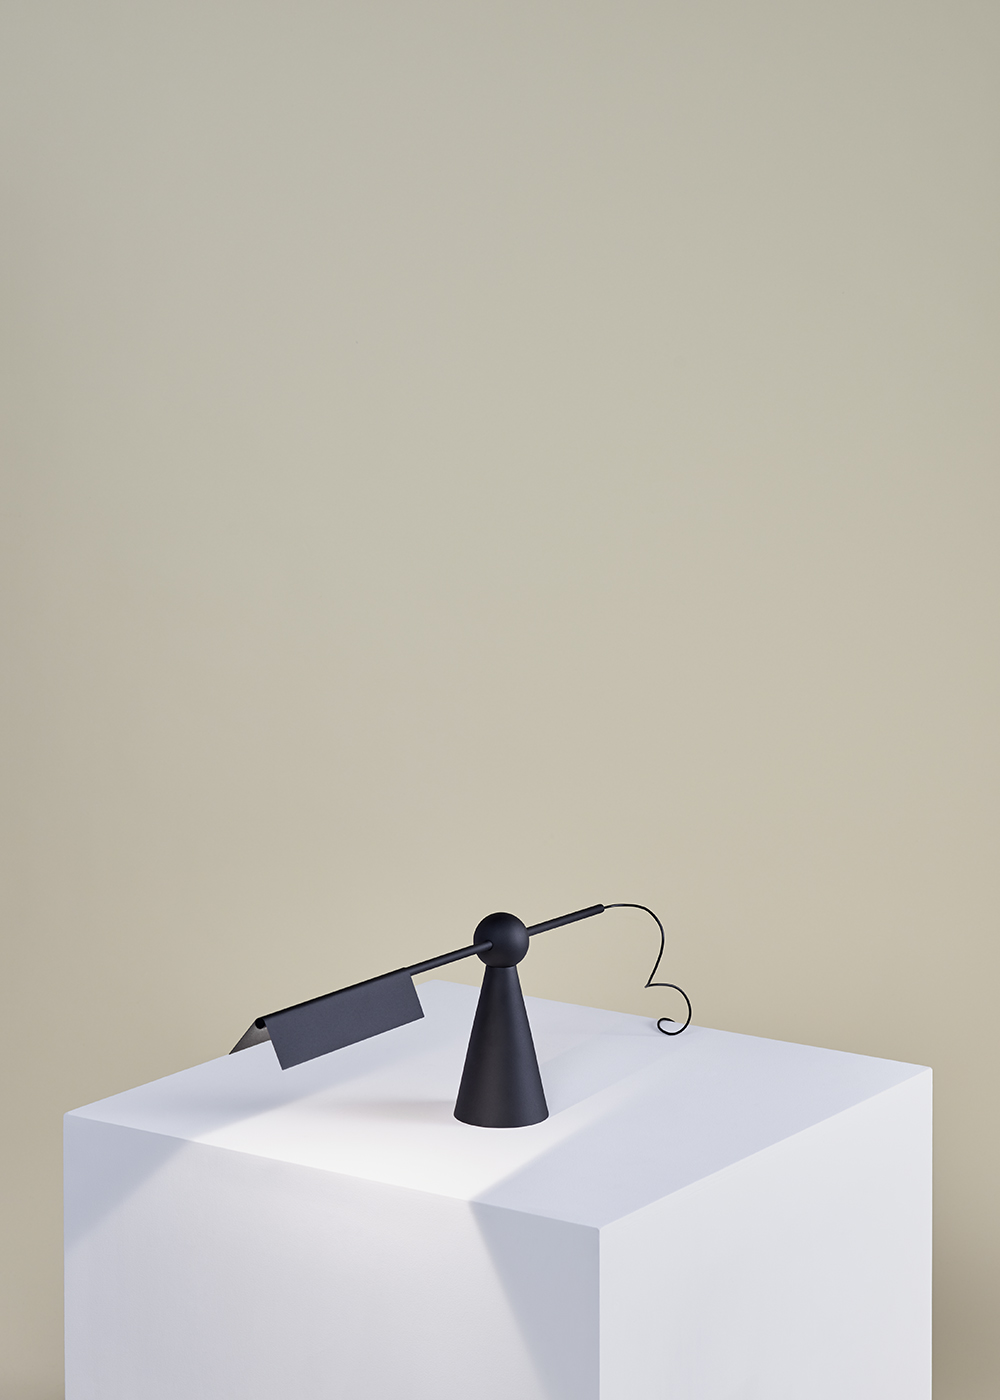 Earnest Studio | Mill table lamp